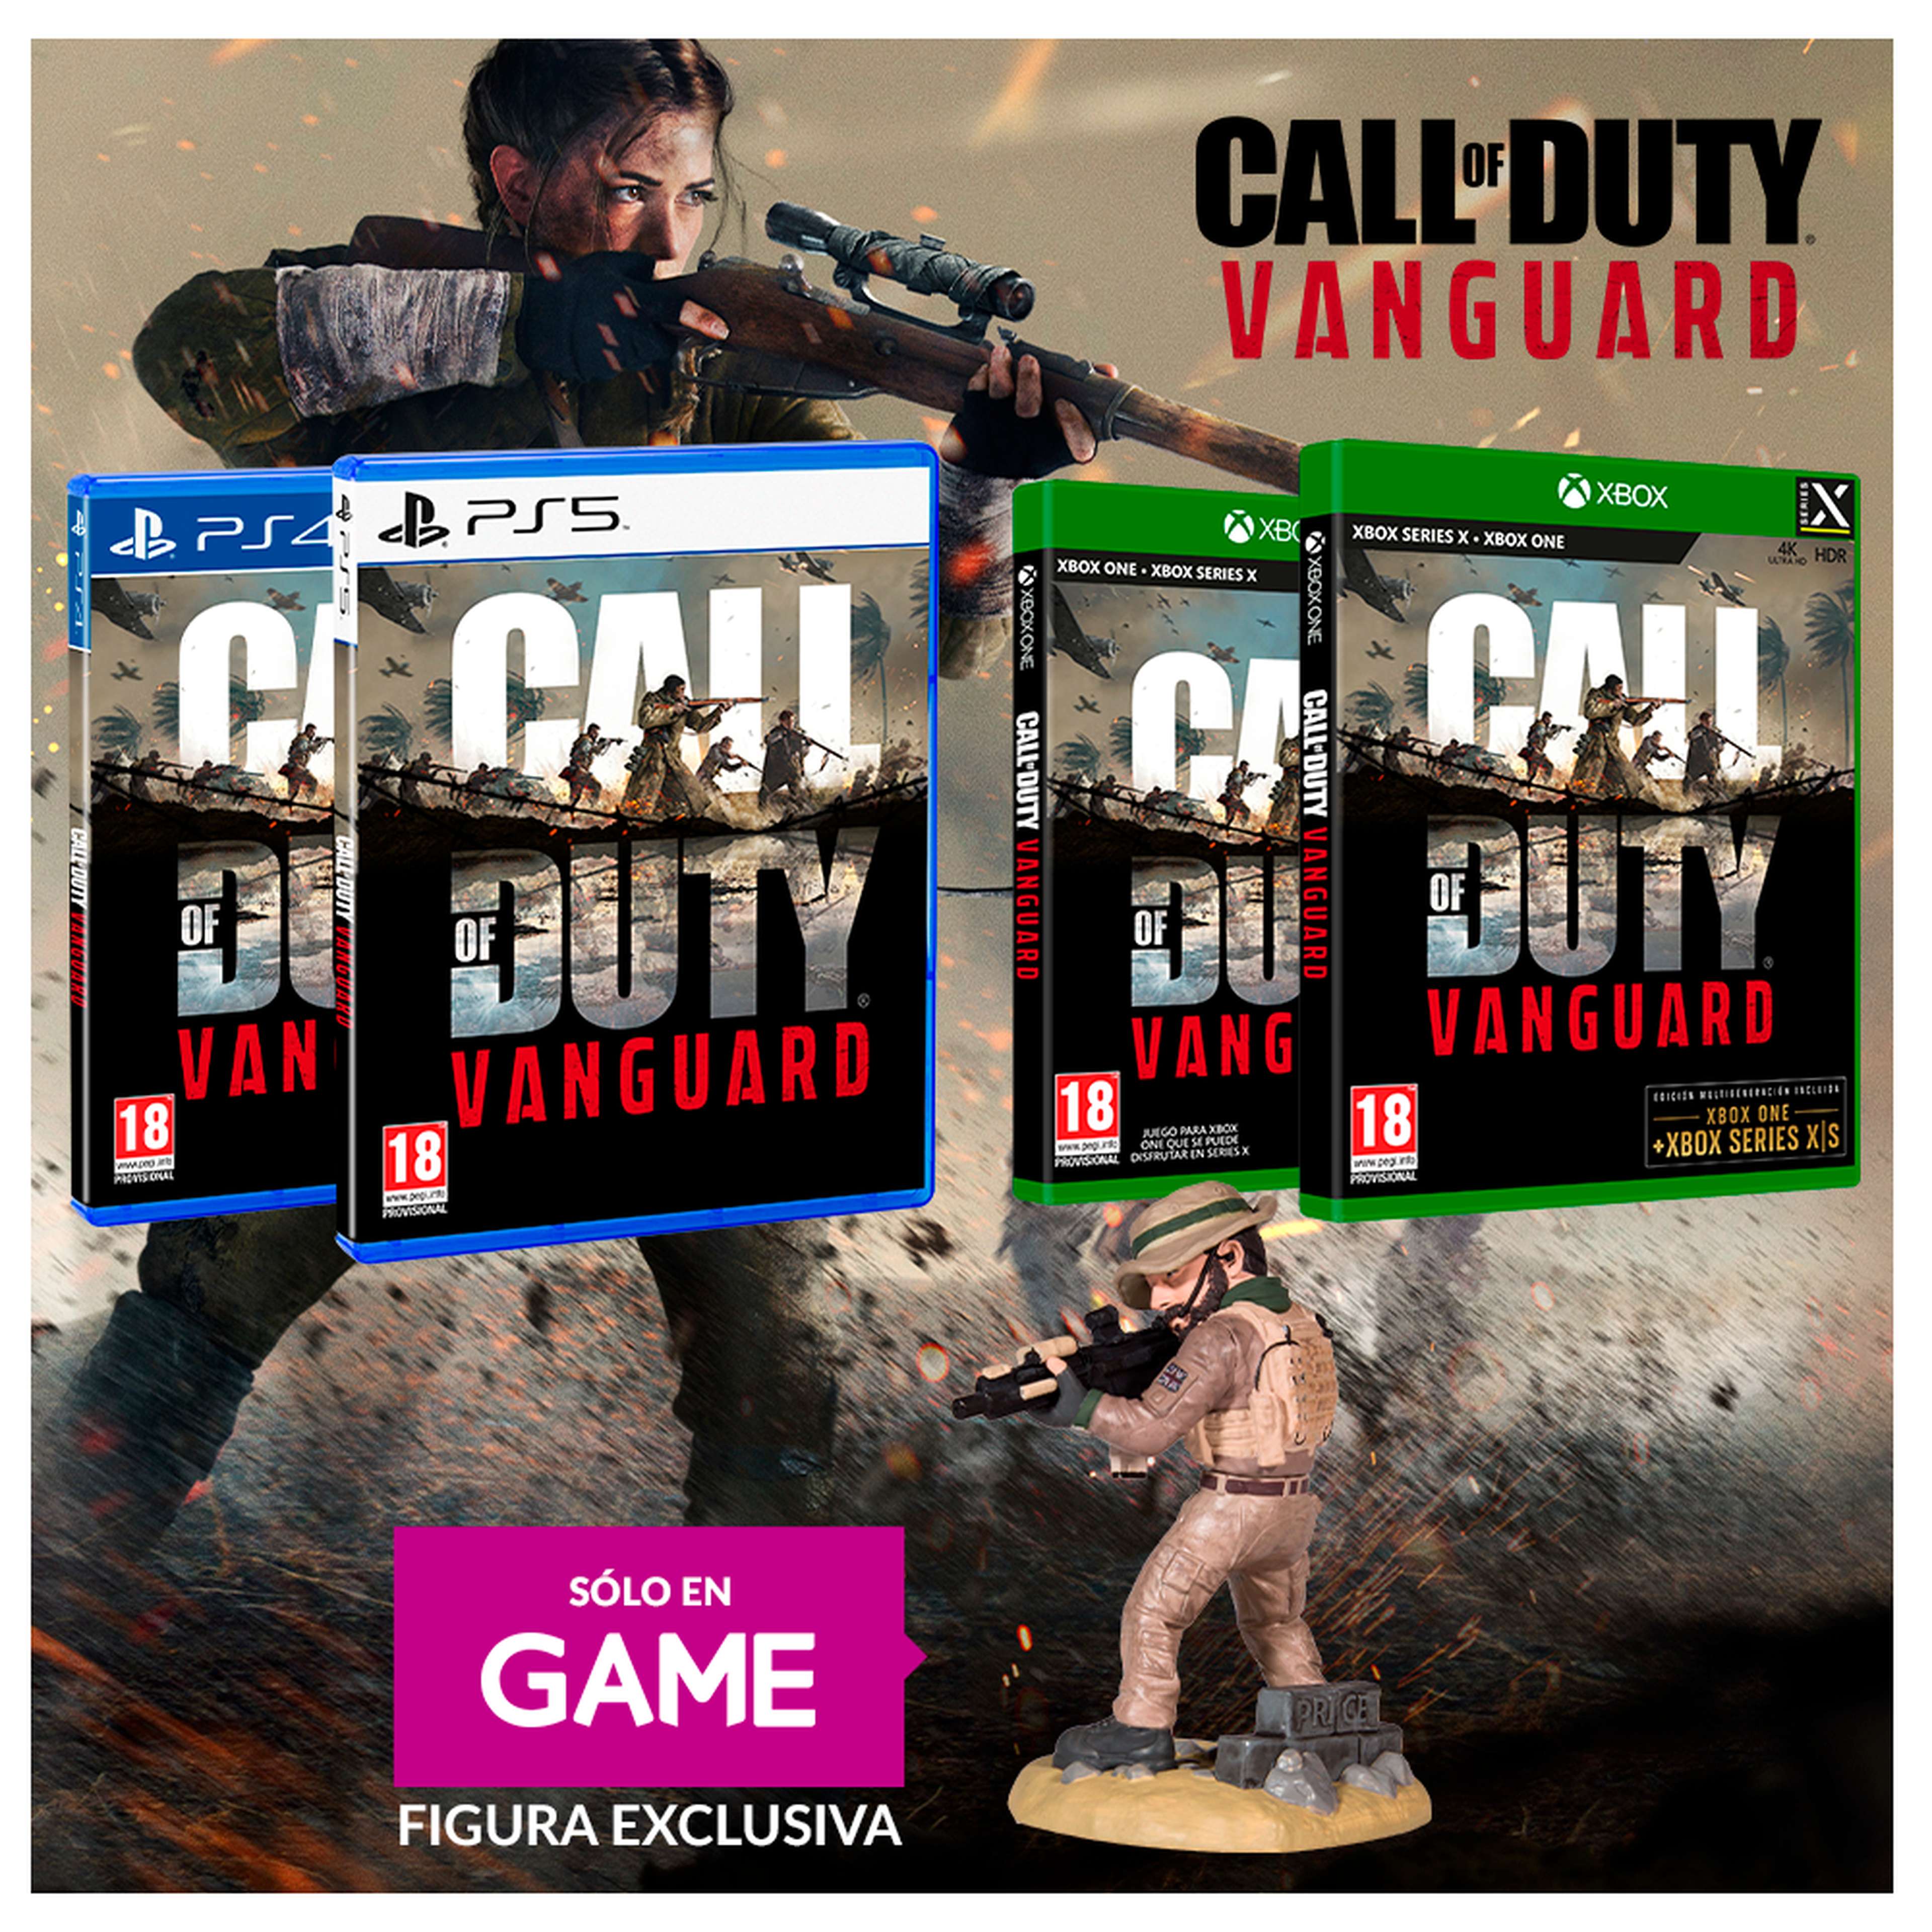 Call of Duty Vanguard GAME